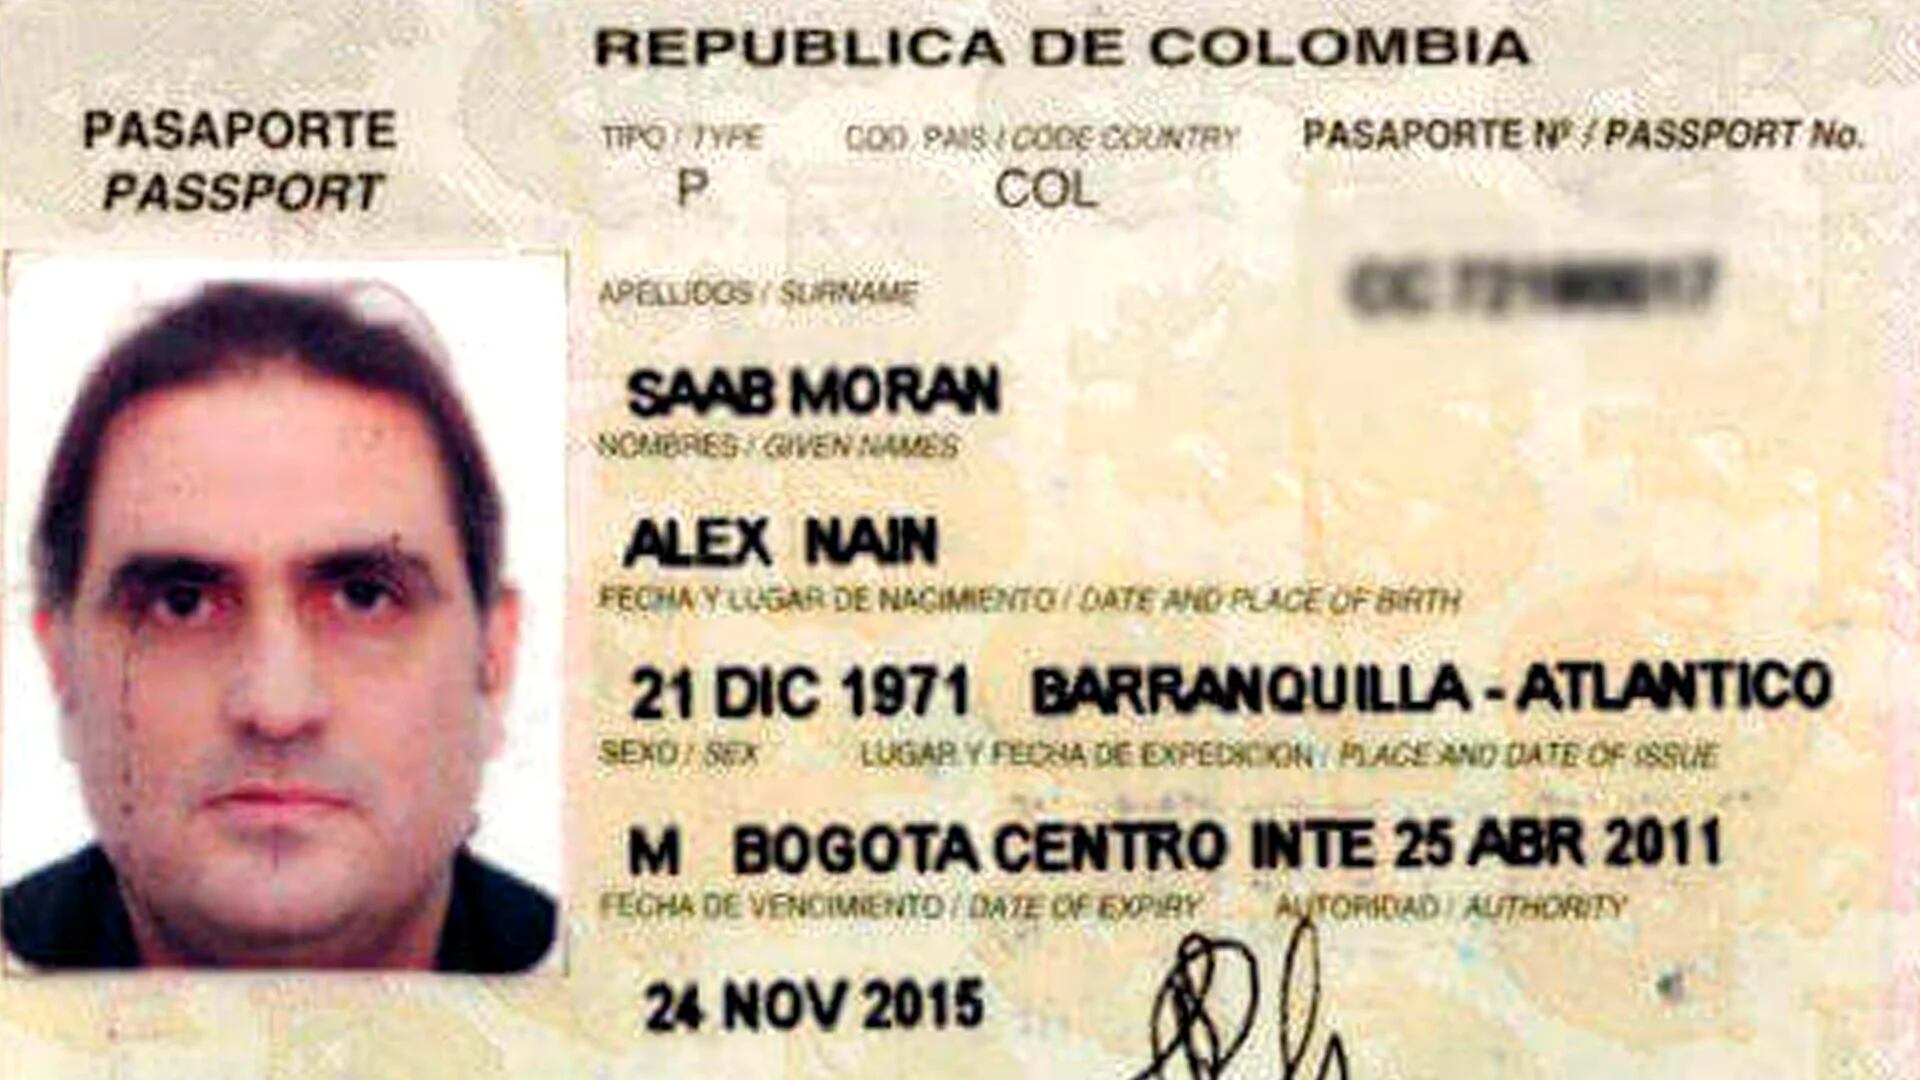 El pasaporte de Saab